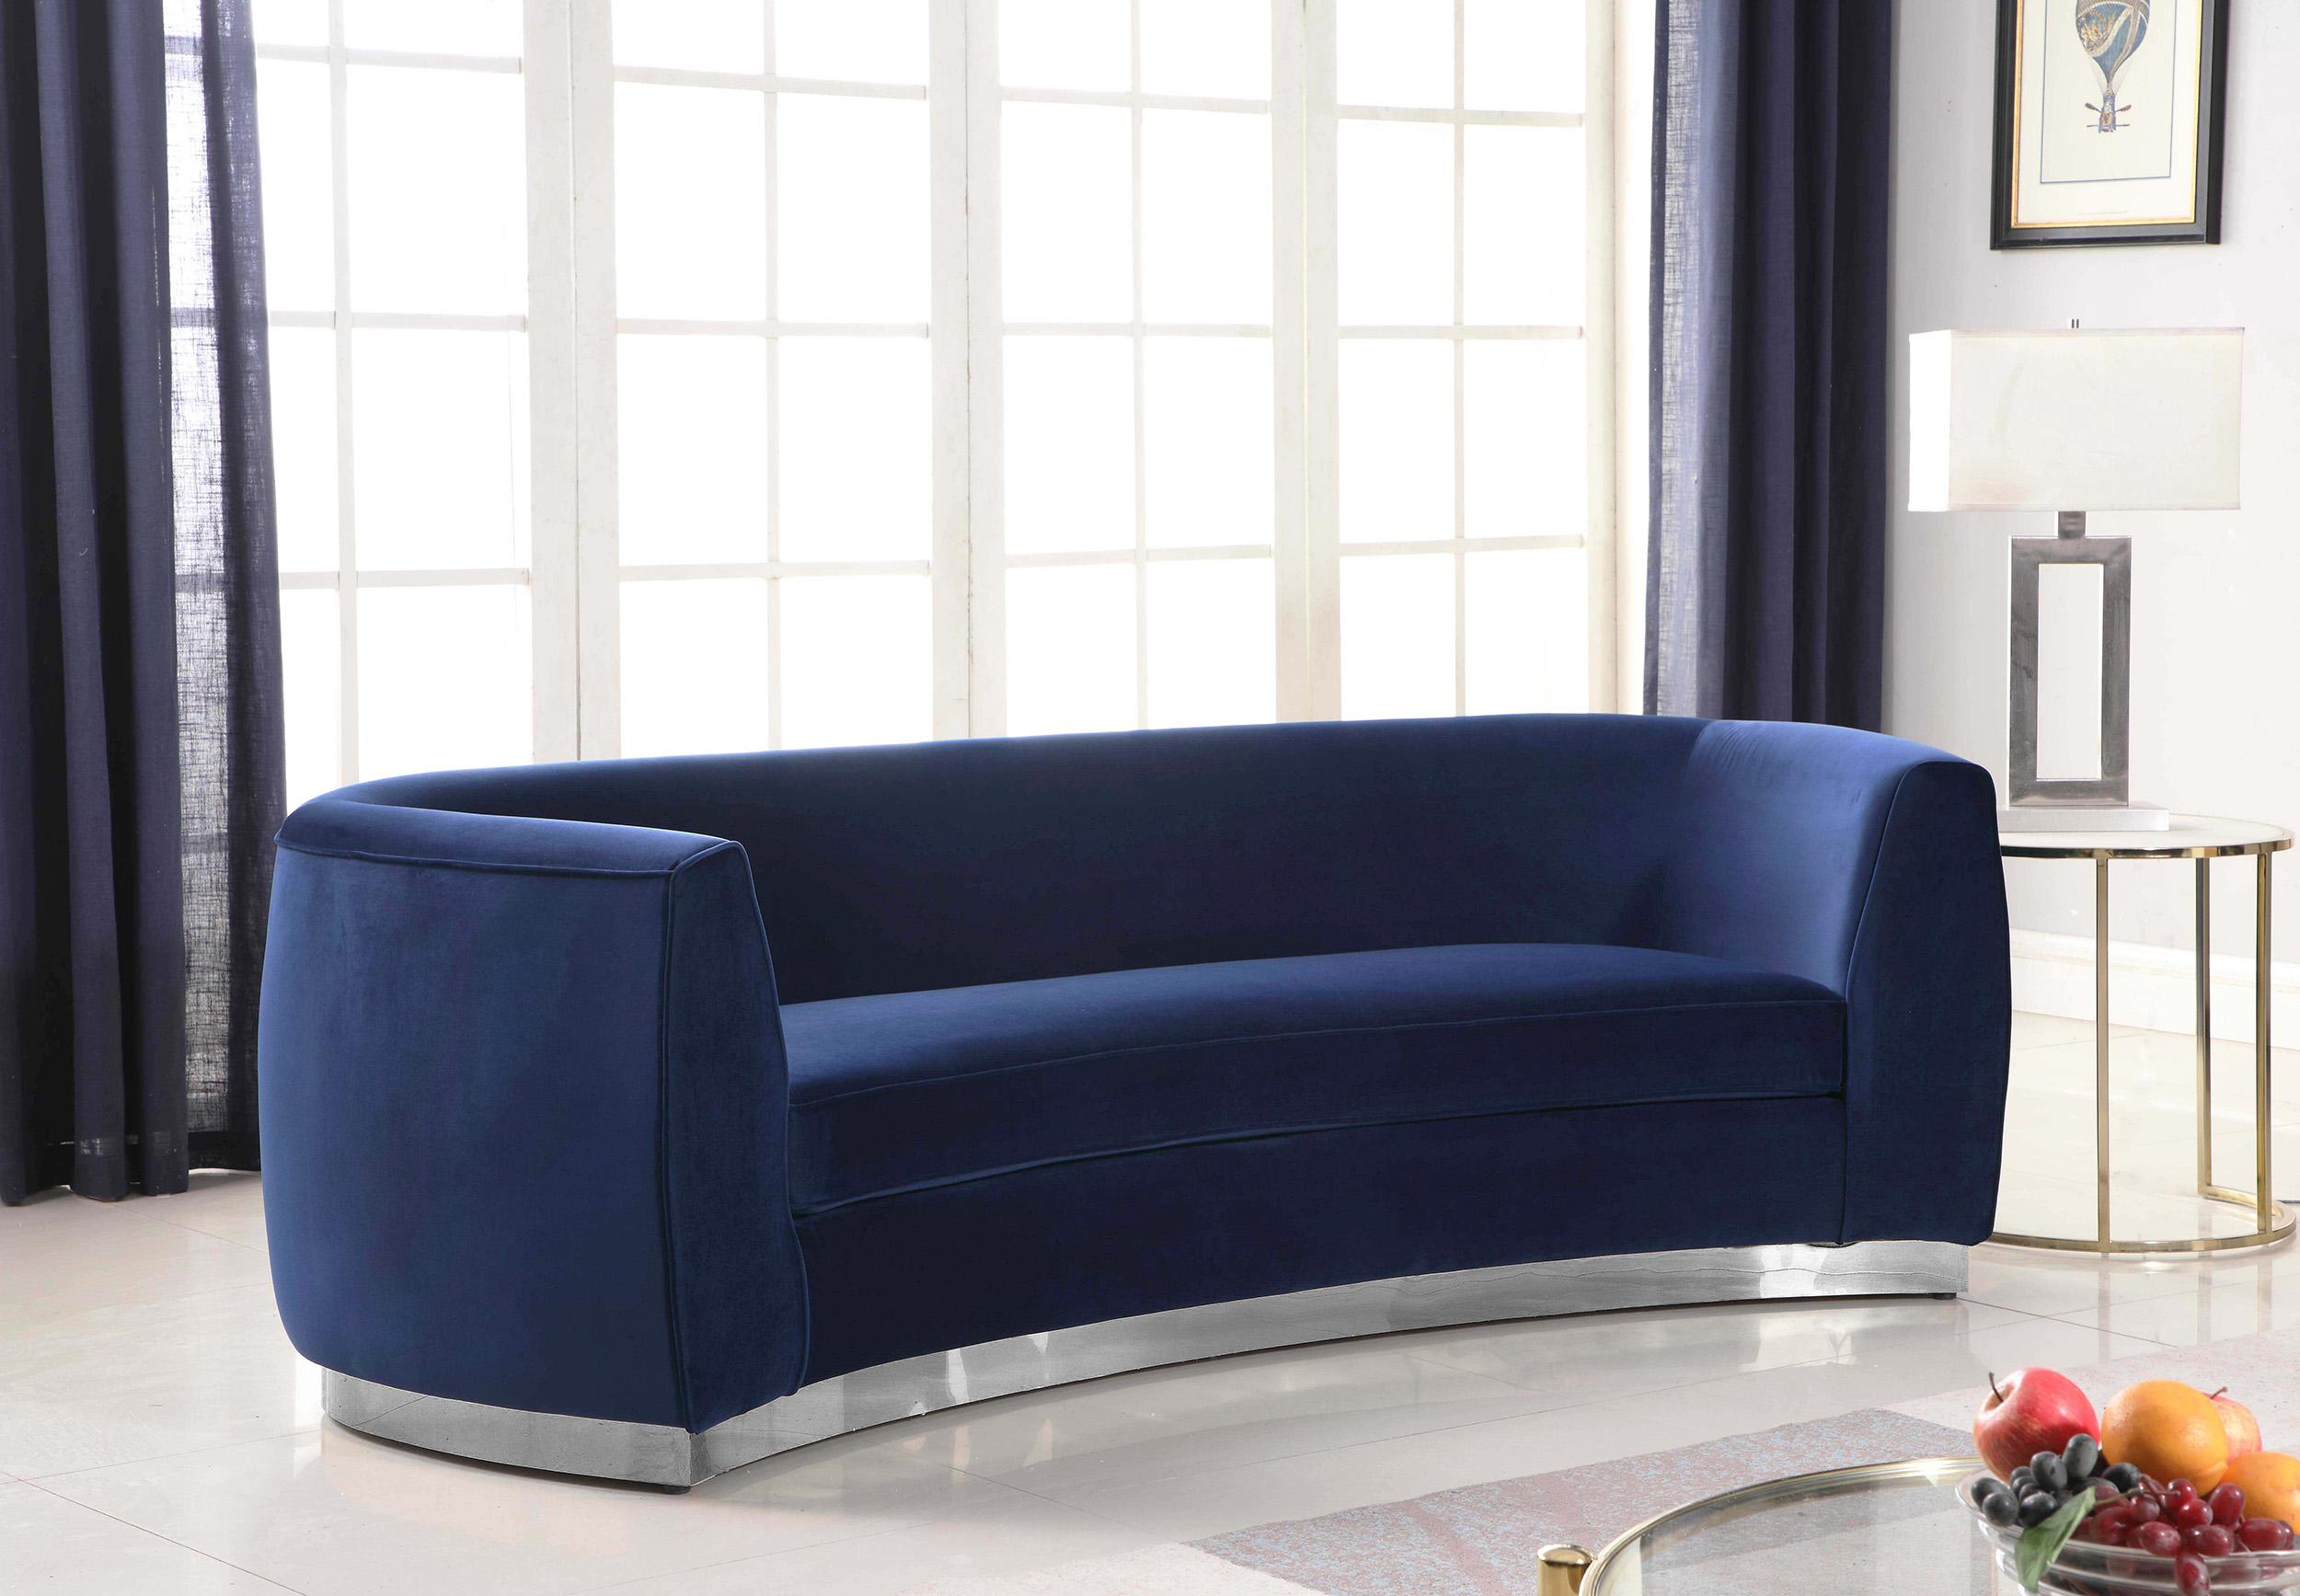 

    
Glam Navy Velvet Sofa Set 2Pcs Julian 621Navy-S Meridian Modern Contemporary
